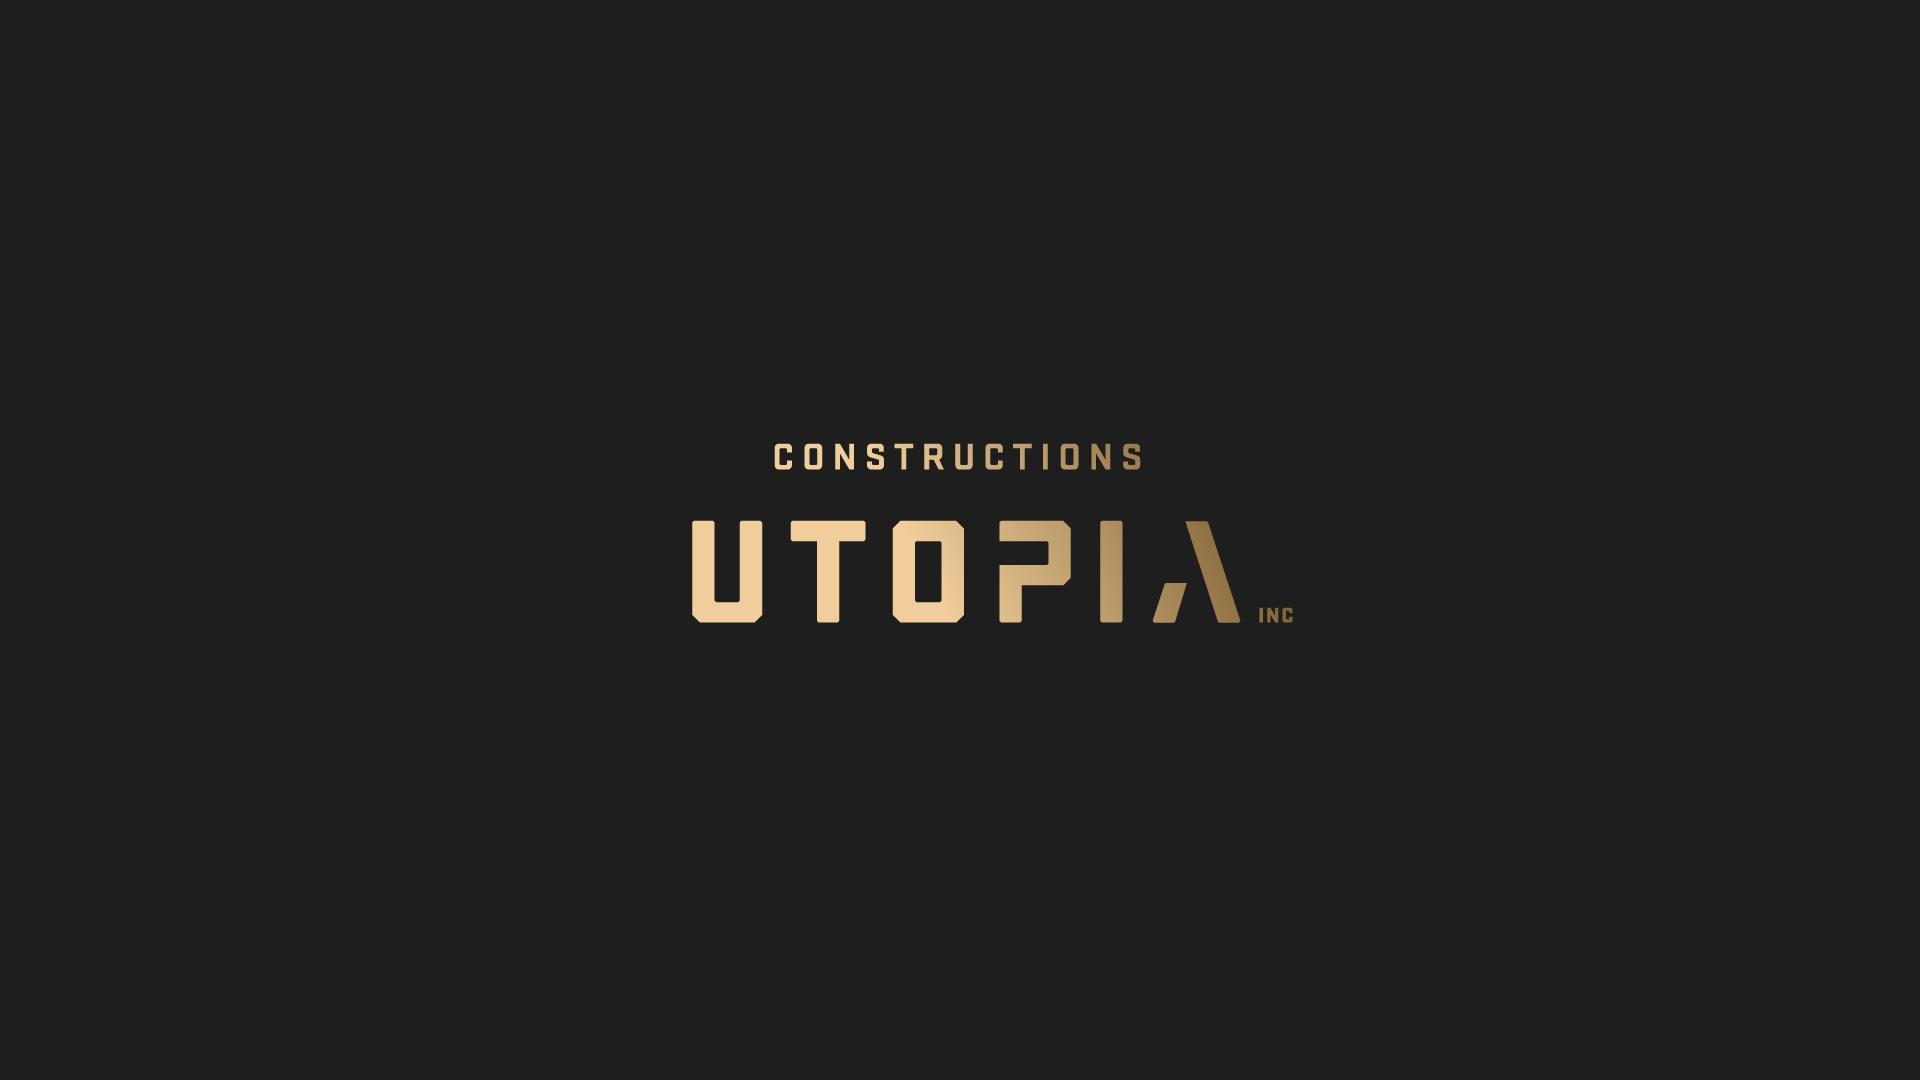 Constructions Utopia inc.